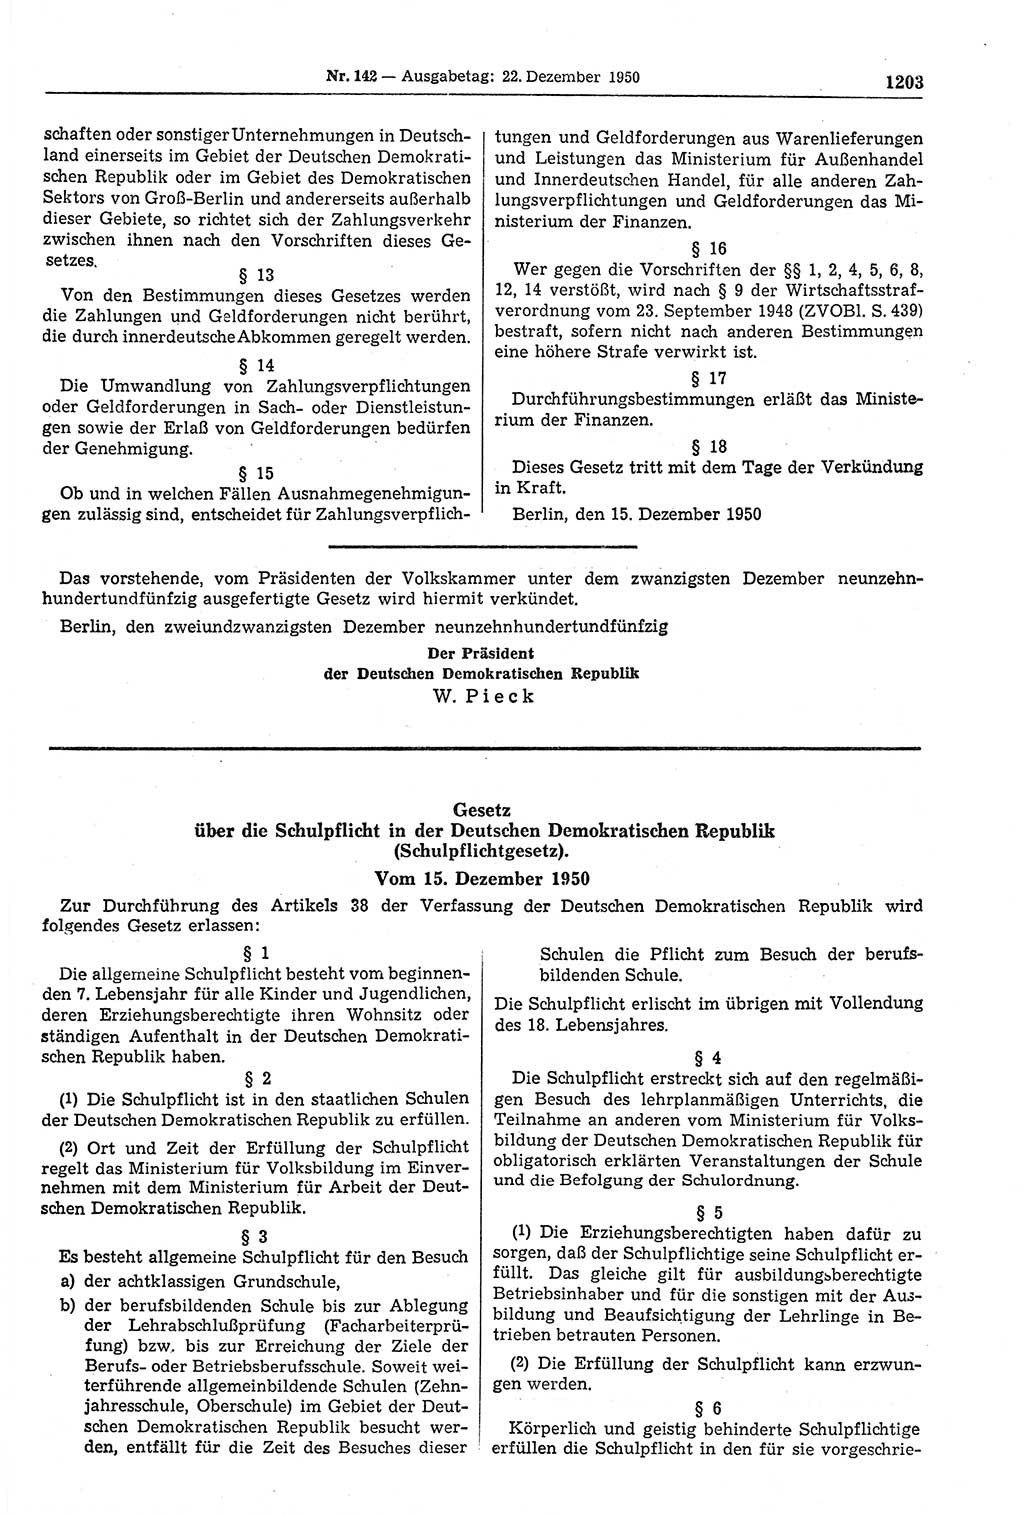 Gesetzblatt (GBl.) der Deutschen Demokratischen Republik (DDR) 1950, Seite 1203 (GBl. DDR 1950, S. 1203)